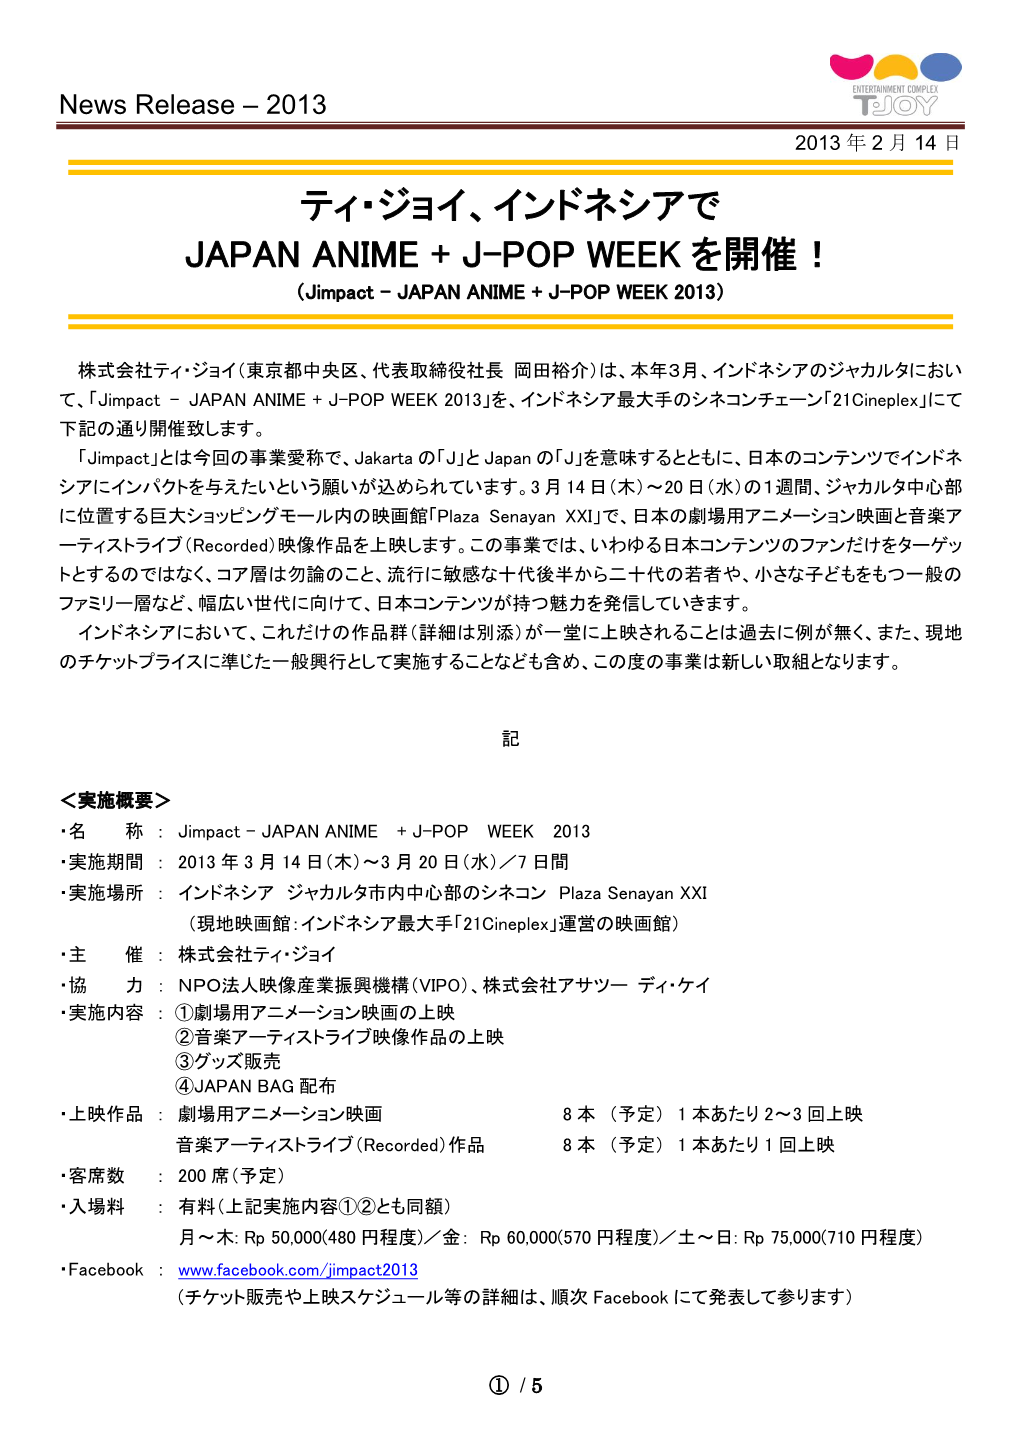 ティ・ジョイ、インドネシアで Japan Anime + J-Pop Week を